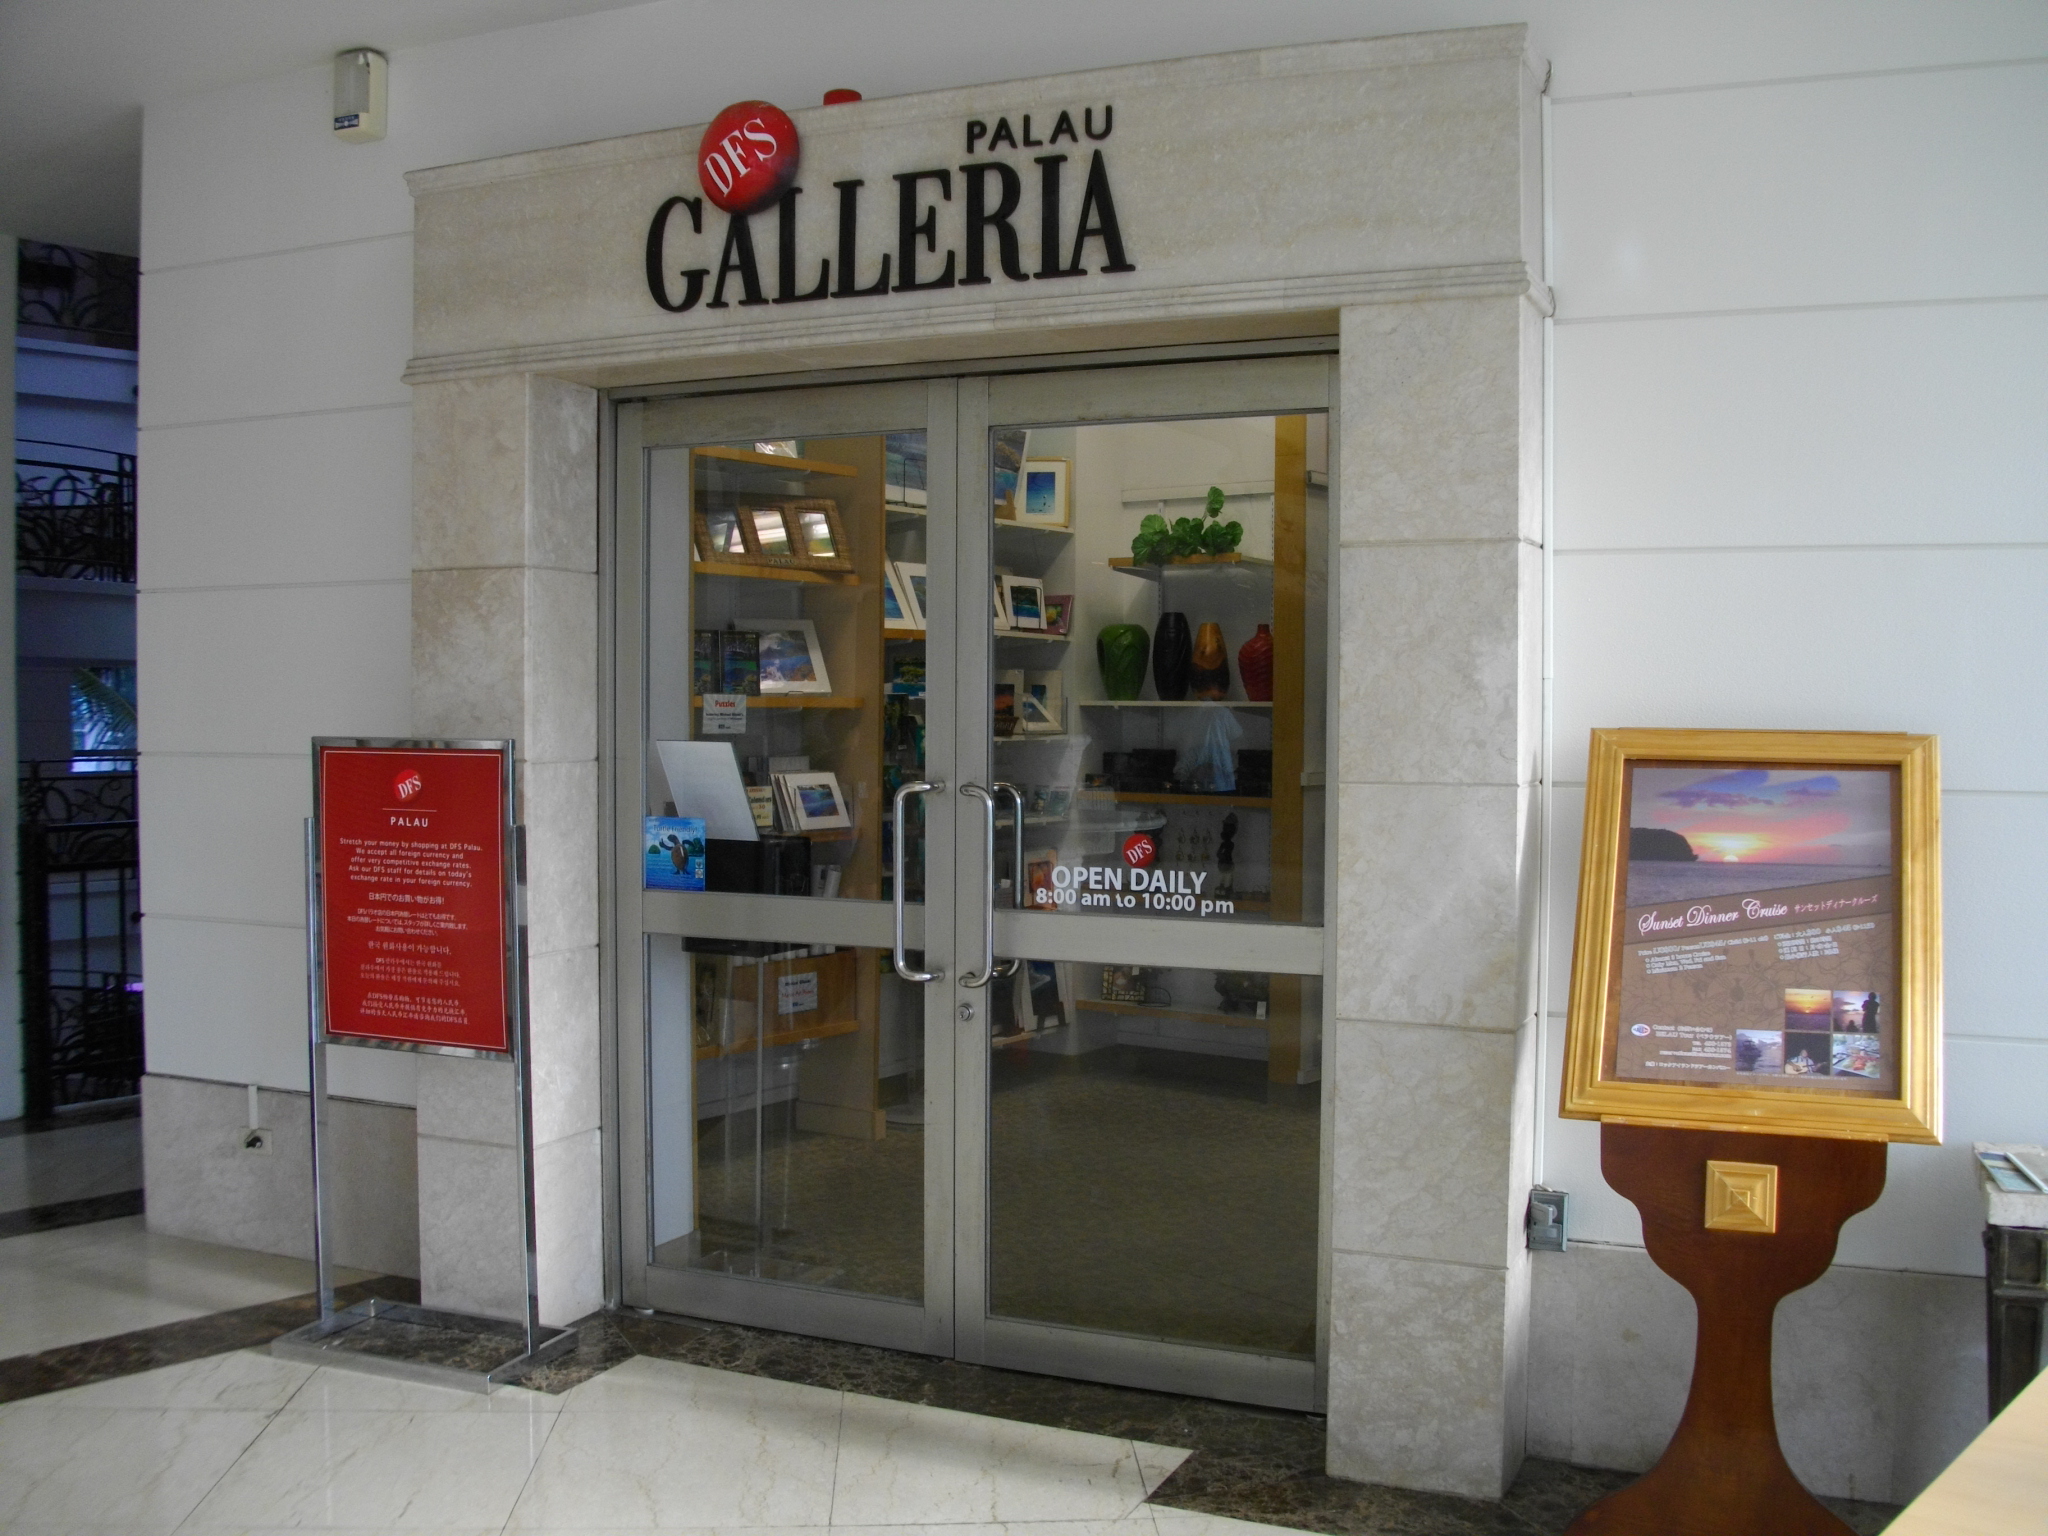 DFS Galleria - Wikidata